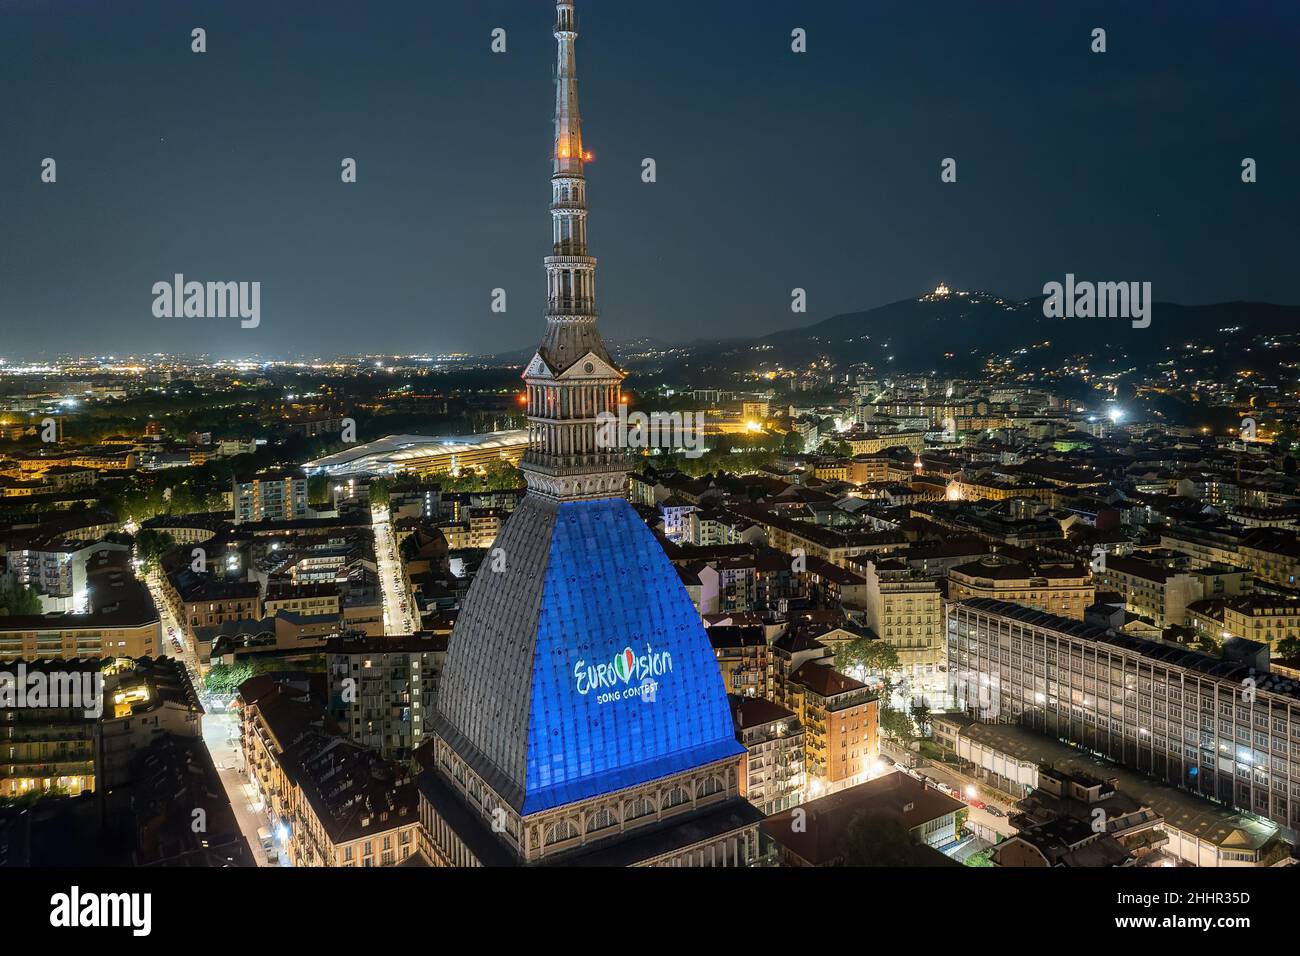 Le logo du Concours Eurovision de la chanson est projeté sur le Mole Antonelliana.L'édition 66th aura lieu à Turin en mai 2022.Turin, Italie - janvier 2022 Banque D'Images